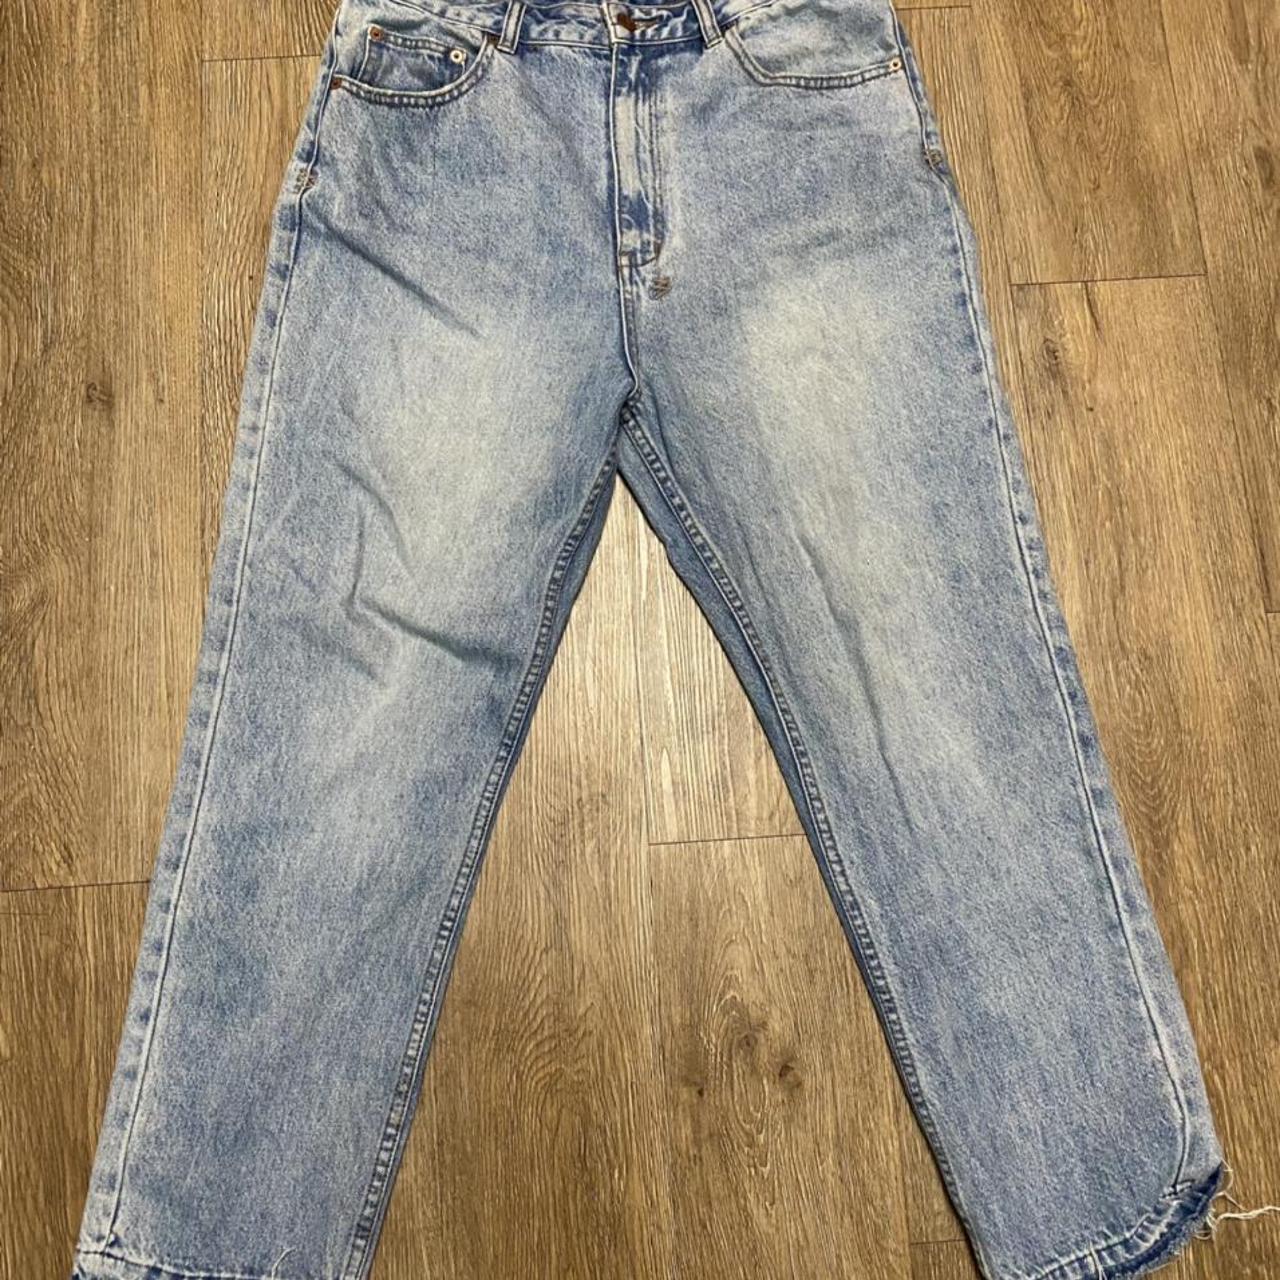 Product Image 2 - Ksubi jeans 
Size : 30